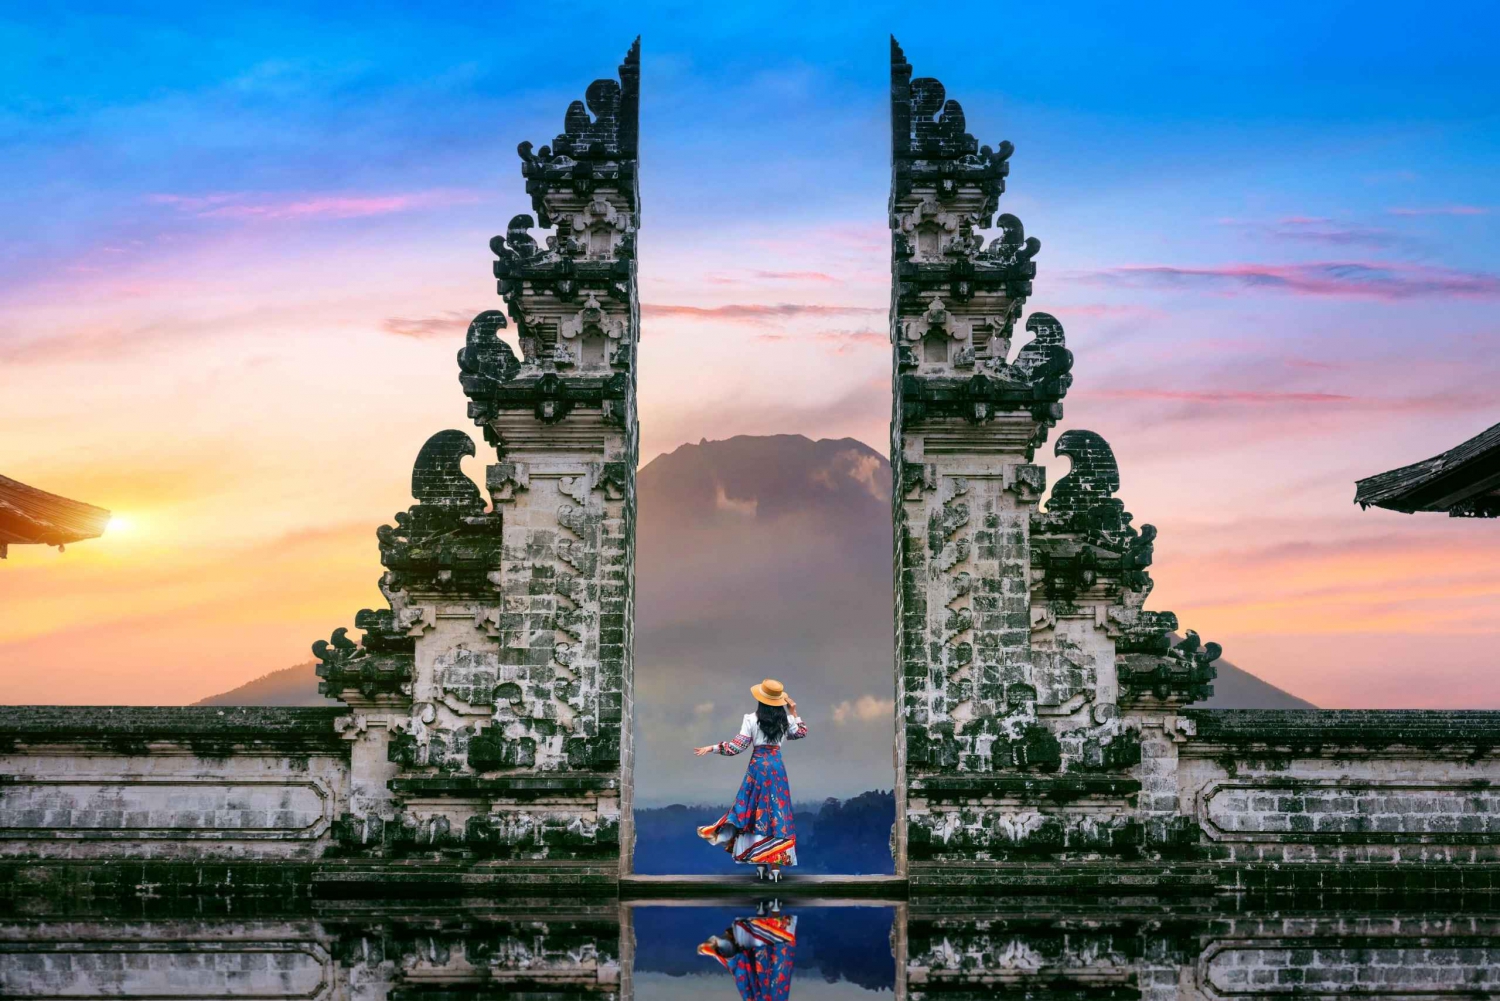 Da Bali : tempio di Lempuyang, Tirta gangga, taman ujung